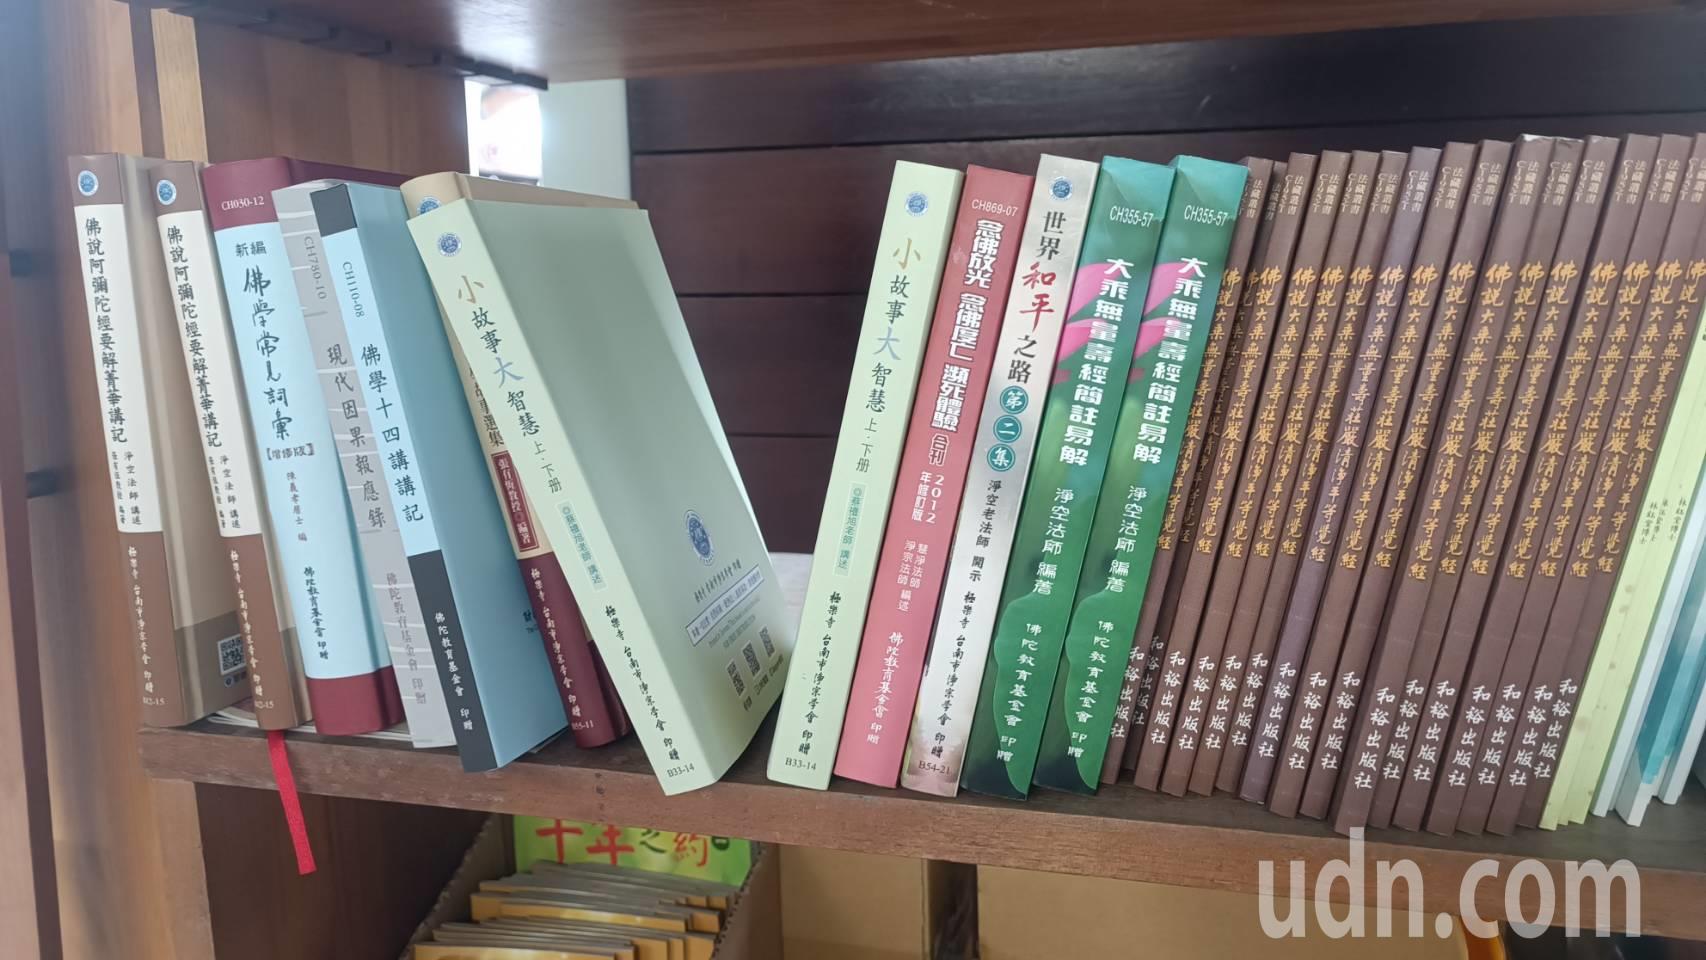 台东县境内火车站「微型图书馆」书架上，也成其他民间宗教团体摆放其他书籍的平台，引来旅客抱怨。记者尤聪光／摄影